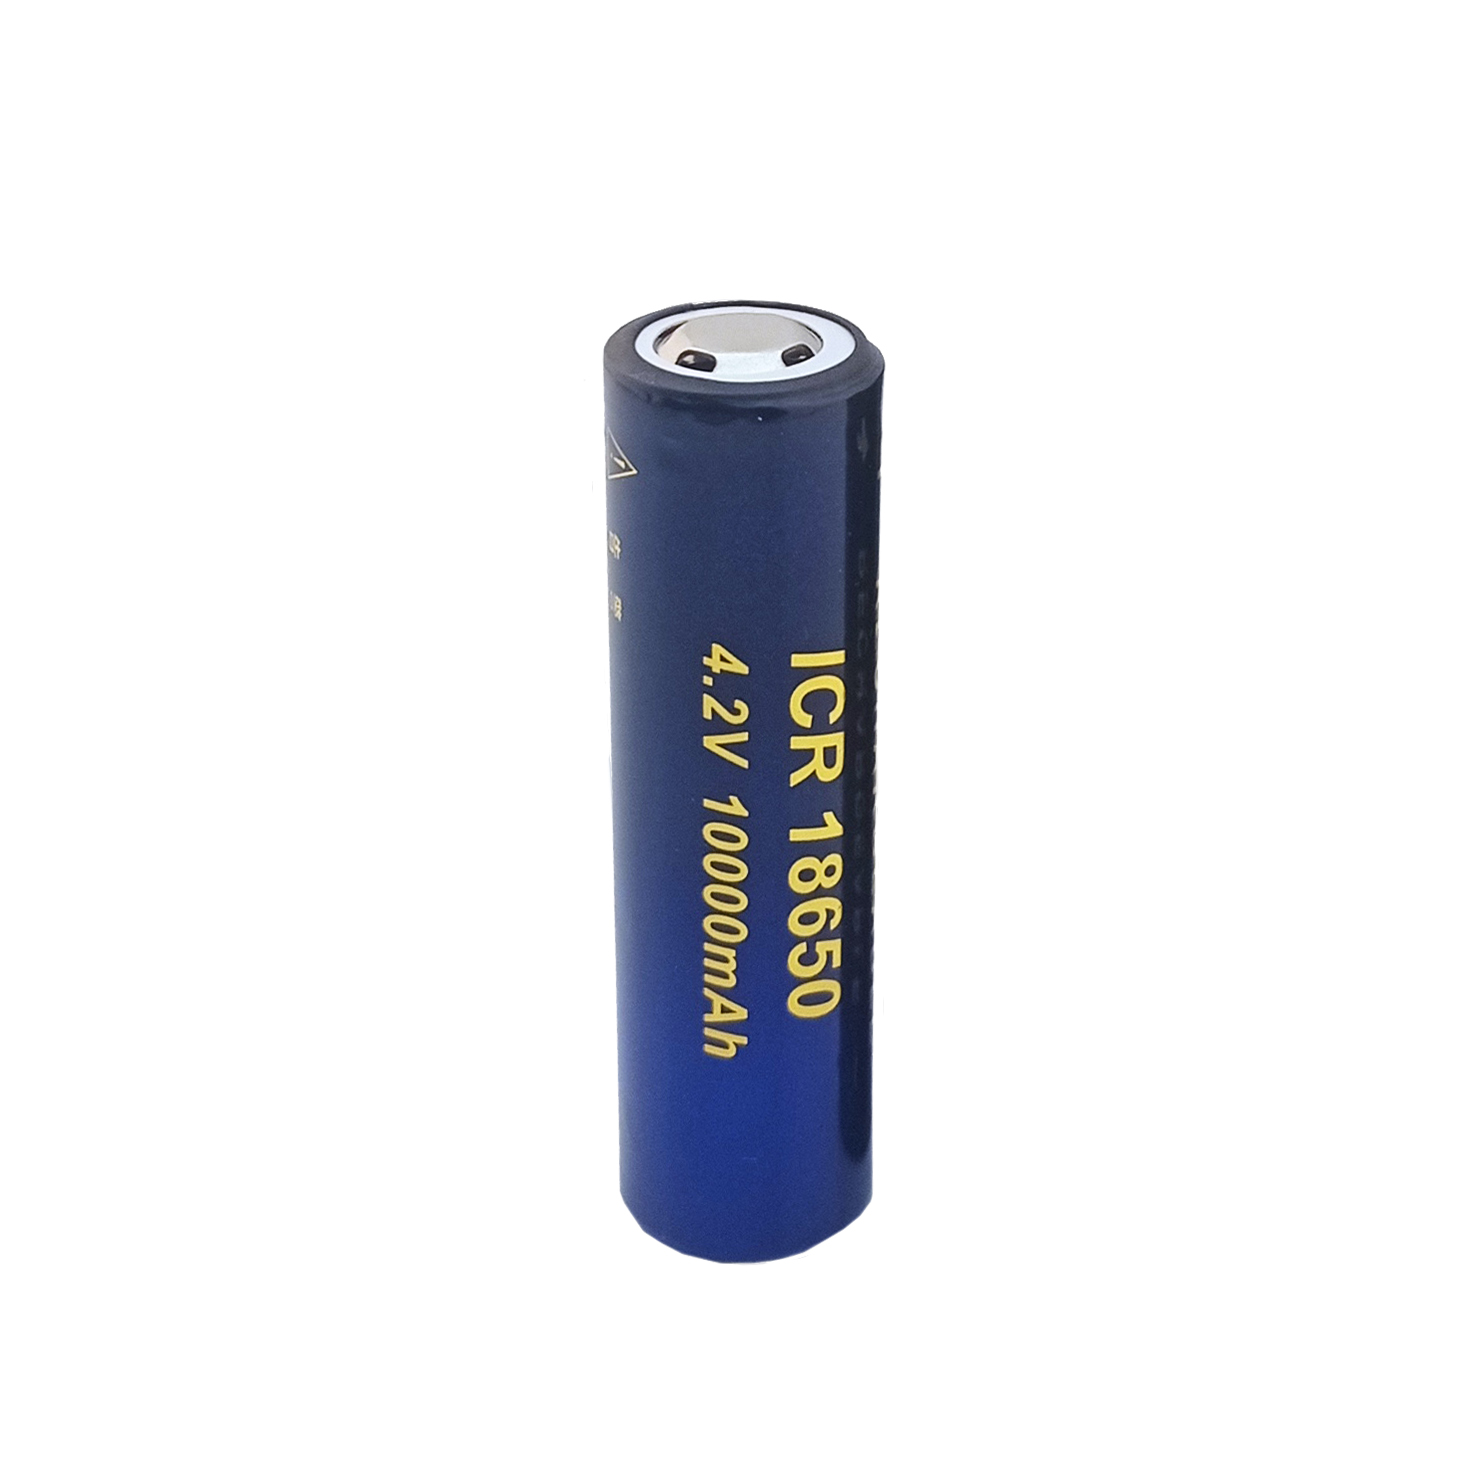 باتری لیتیوم یون قابل شارژ سونی مدل ICR-18650 ظرفیت 10000 میلی آمپرساعت بسته 2 عددی thumb 1